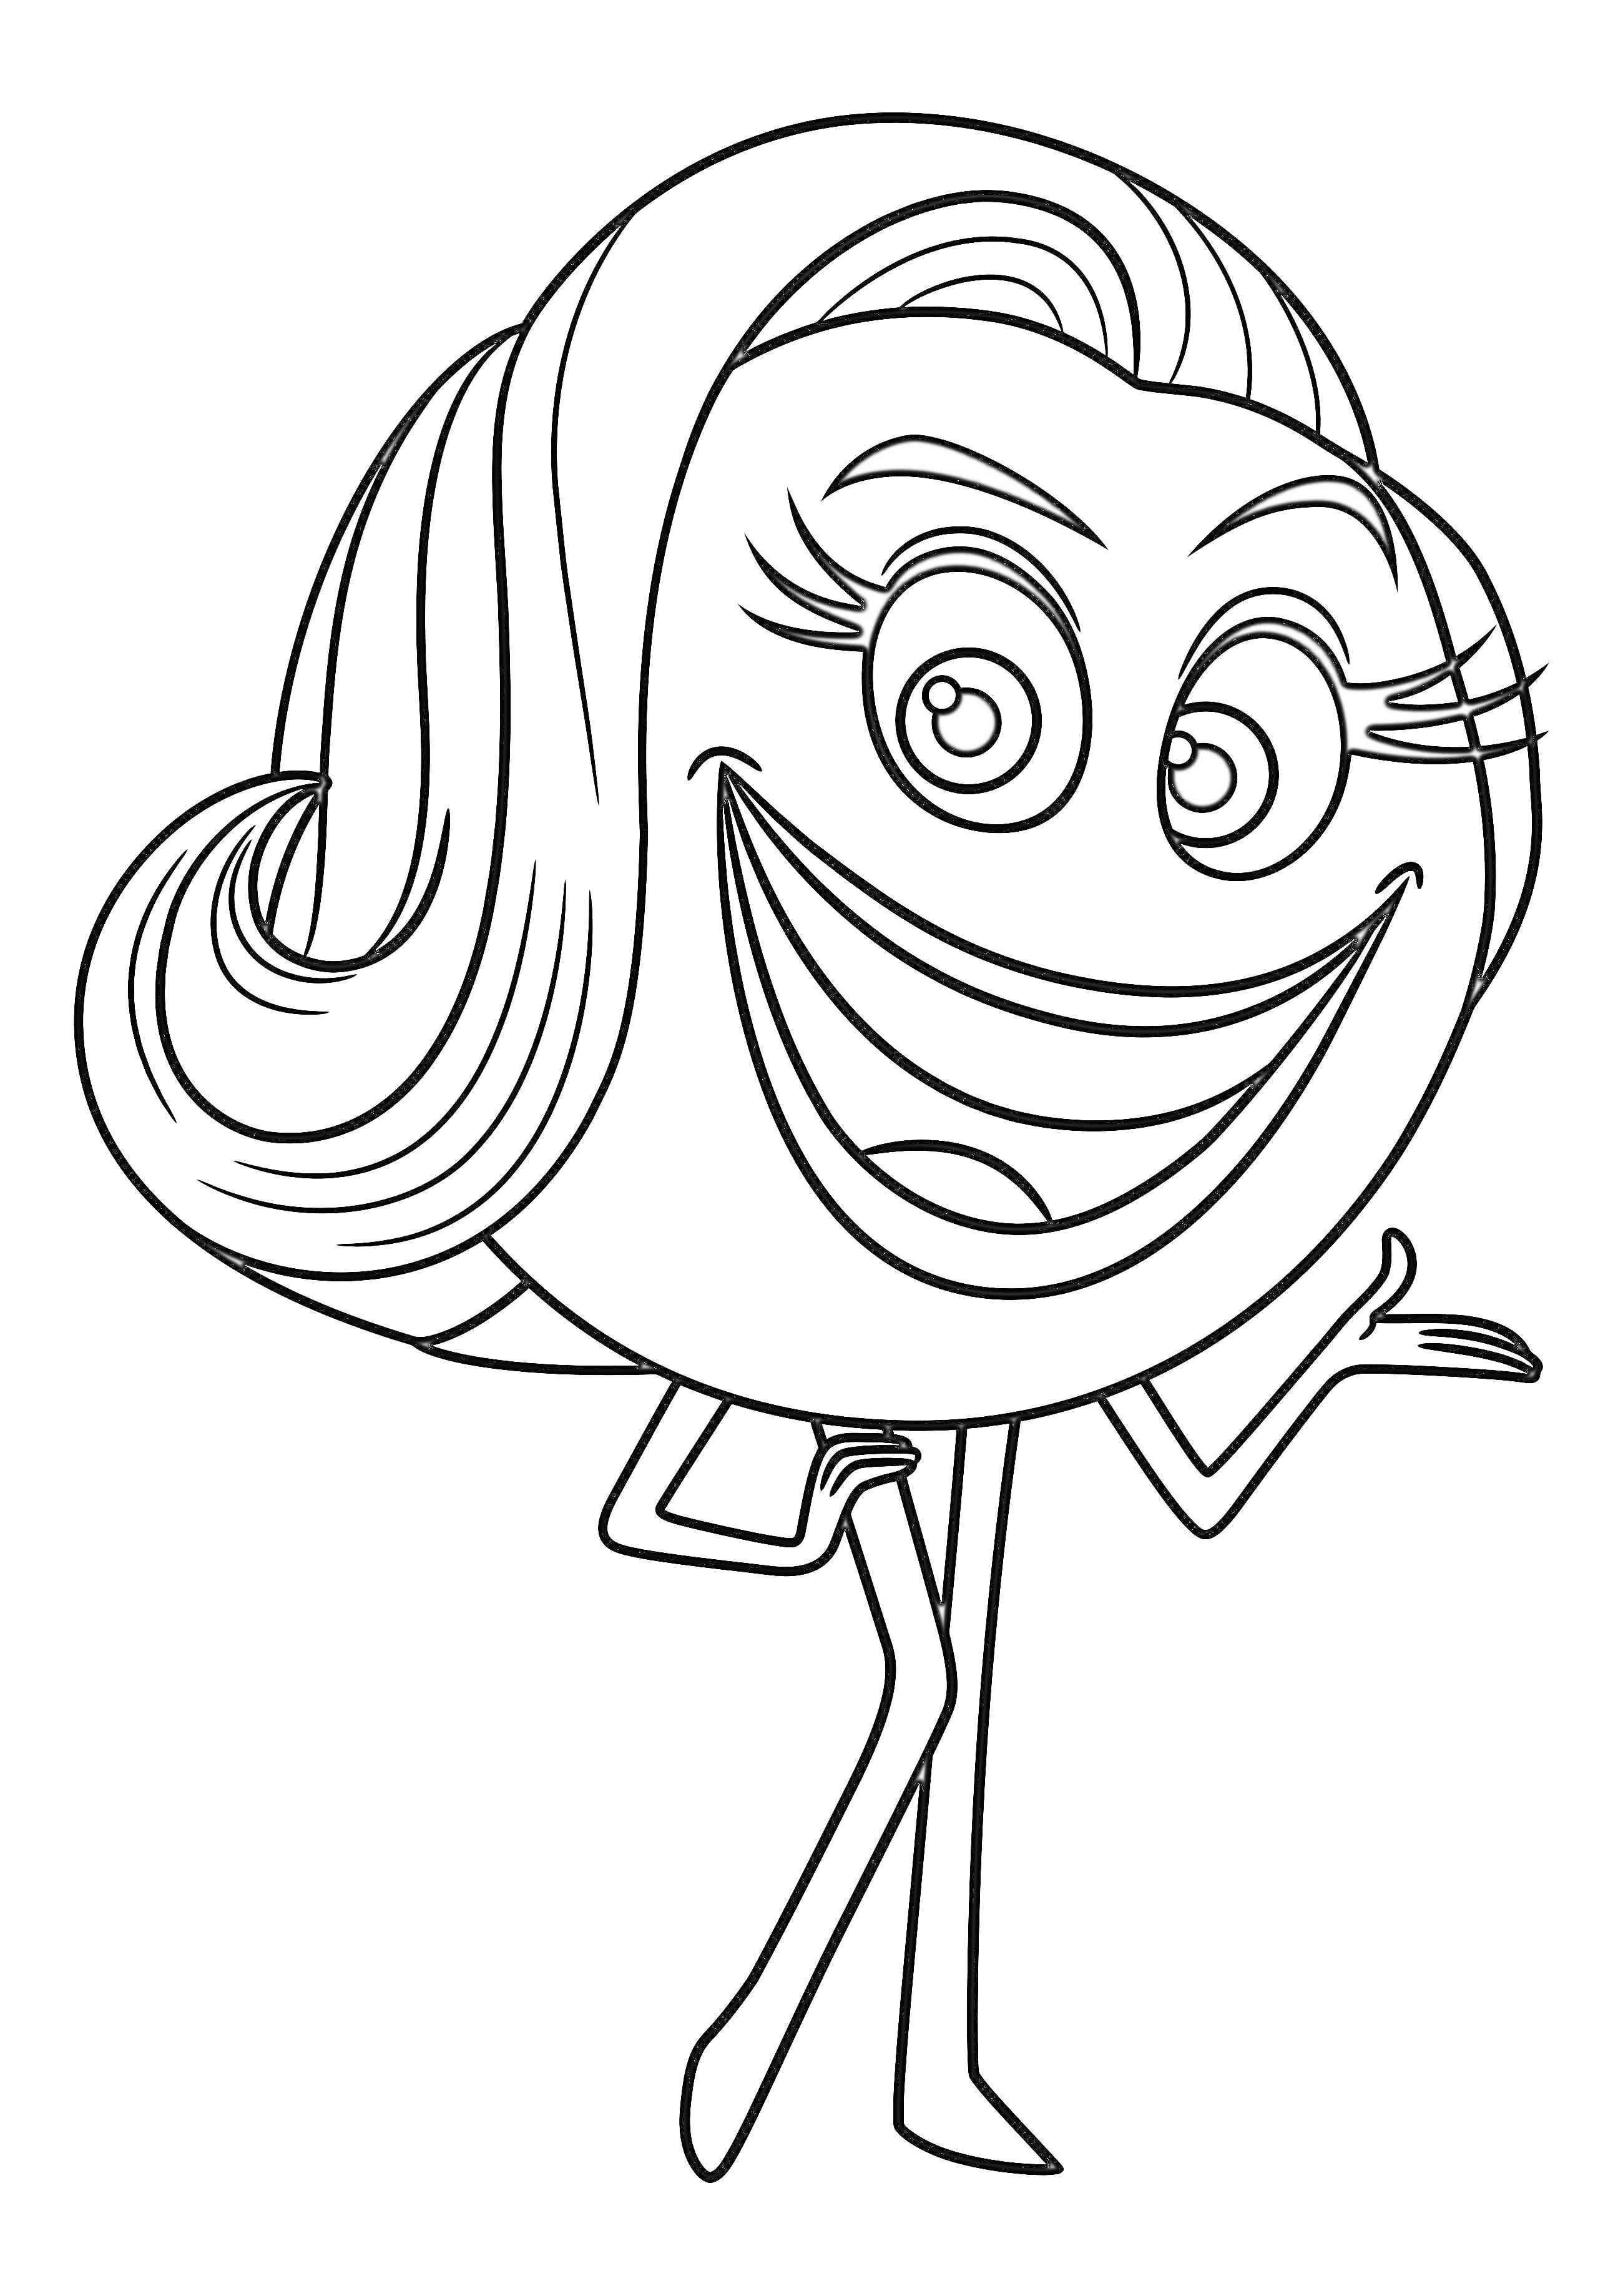 Раскраска Эмоджи персонаж с длинными волосами, с большими глазами и широкой улыбкой, стоящий на одной ноге и держащий одну руку на бедре, другая рука вытянута в сторону, с накладными ресницами